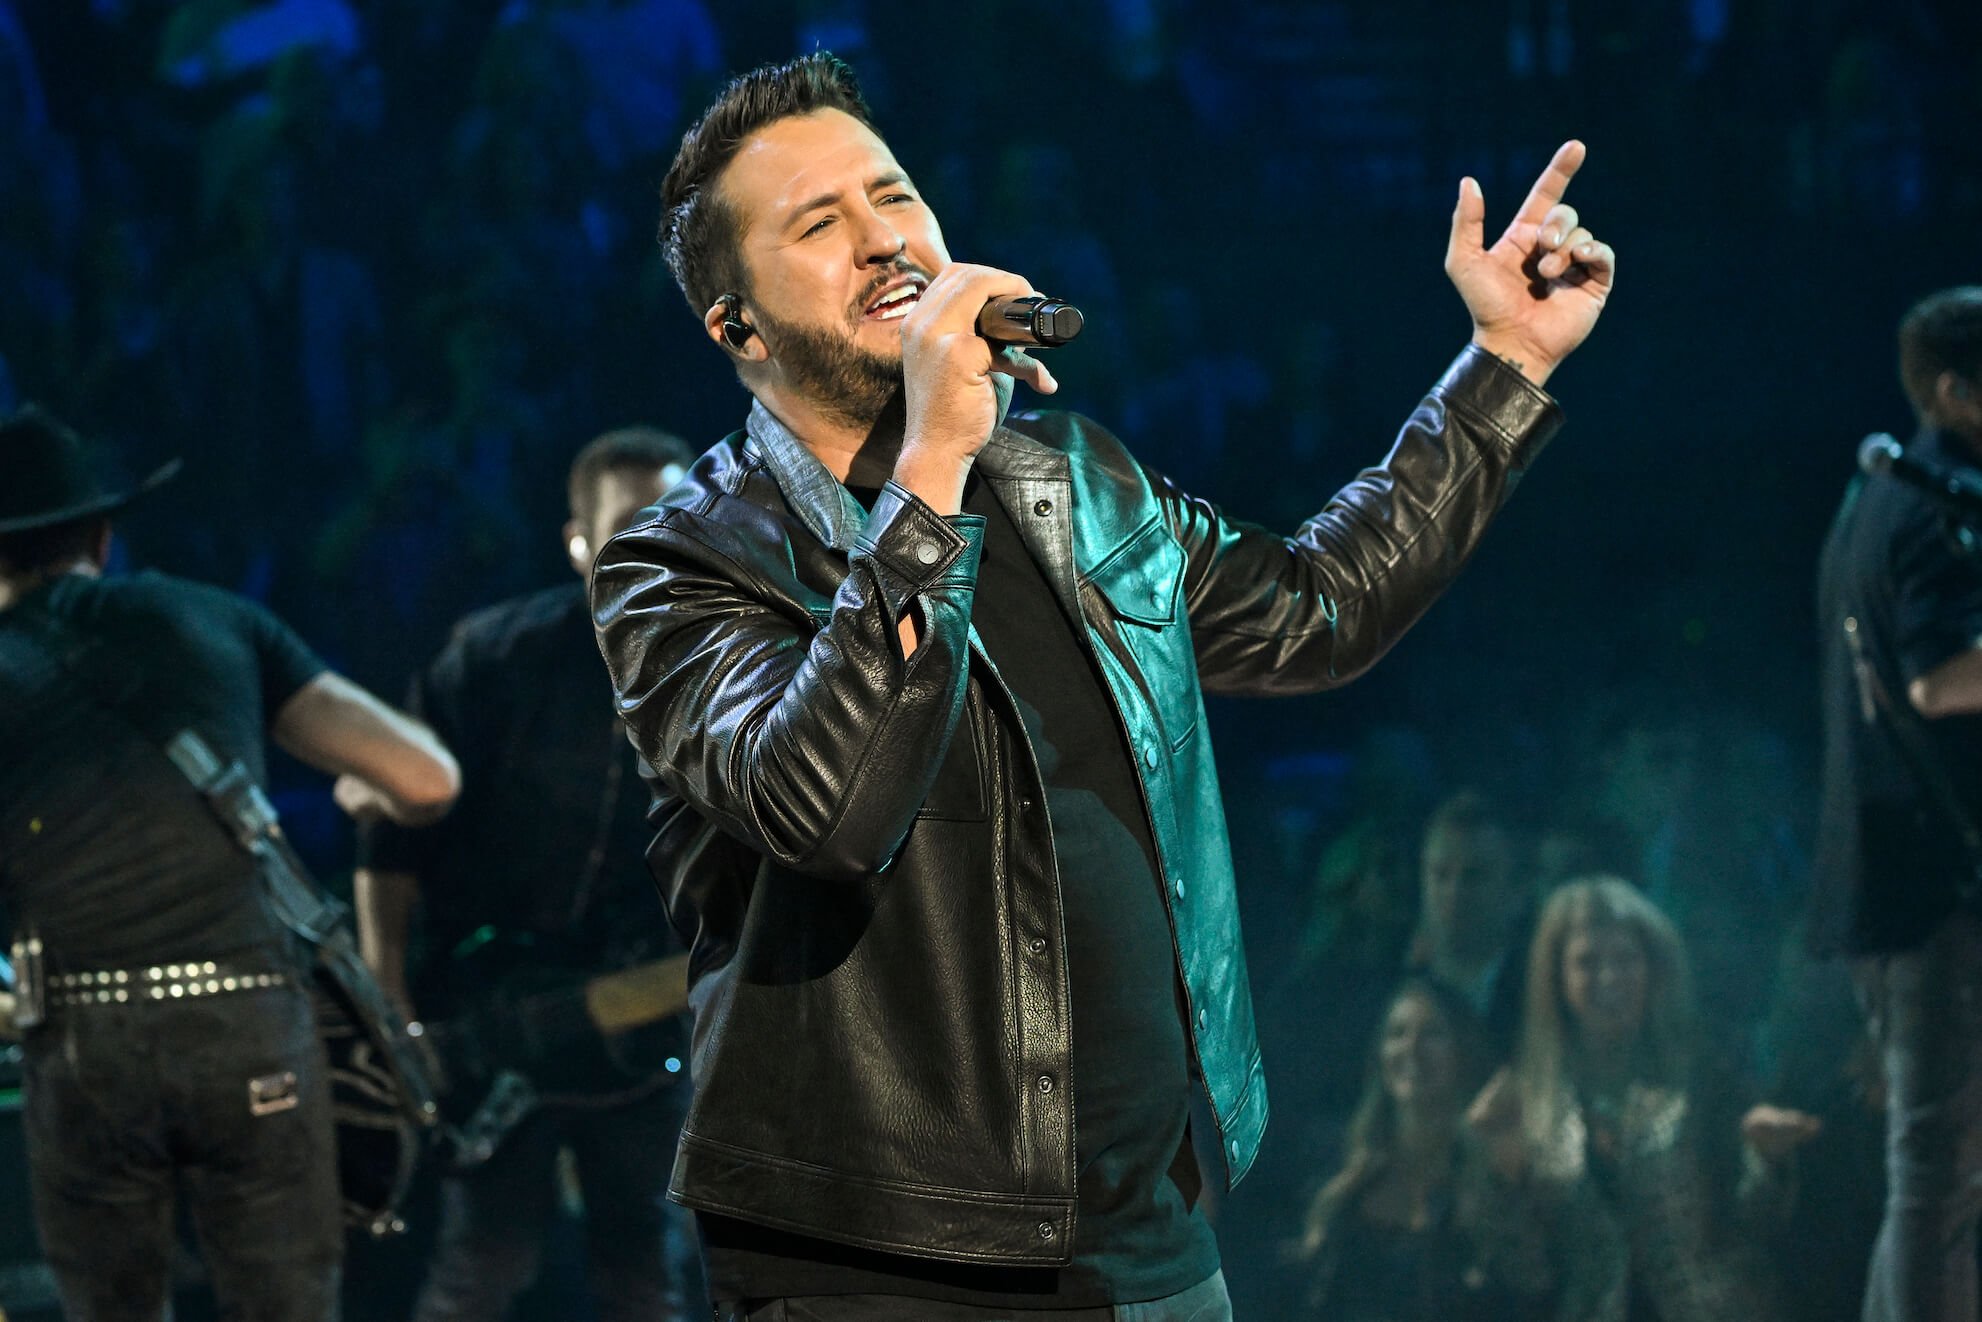 'American Idol' judge Luke Bryan singing on stage